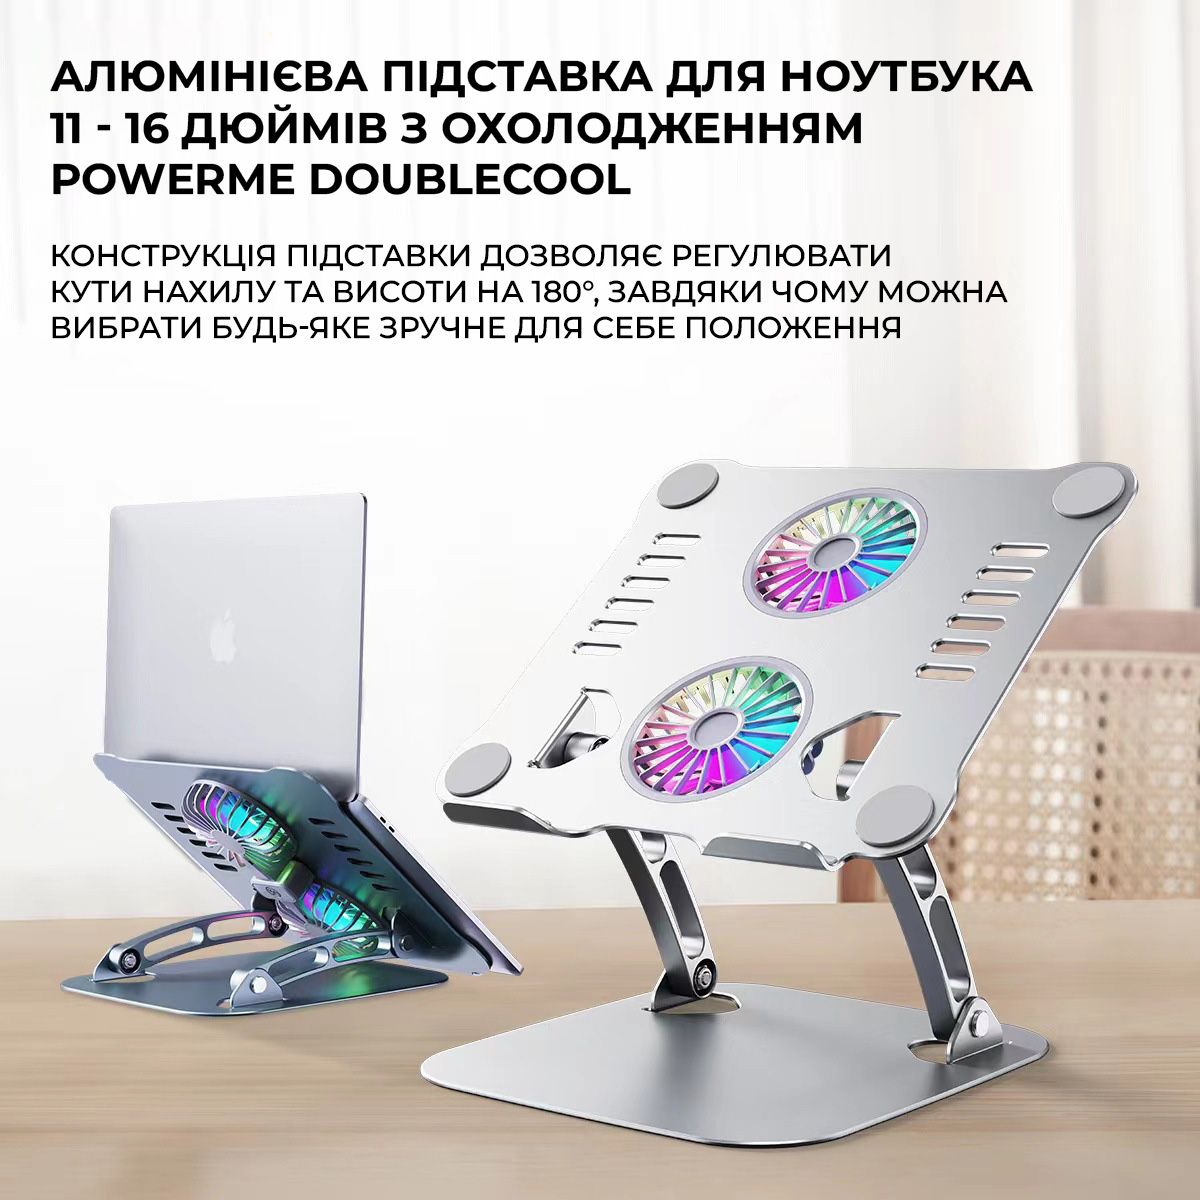 Алюминиевая подставка для ноутбука 11 - 16 дюймов с охлаждением PowerMe DoubleCool